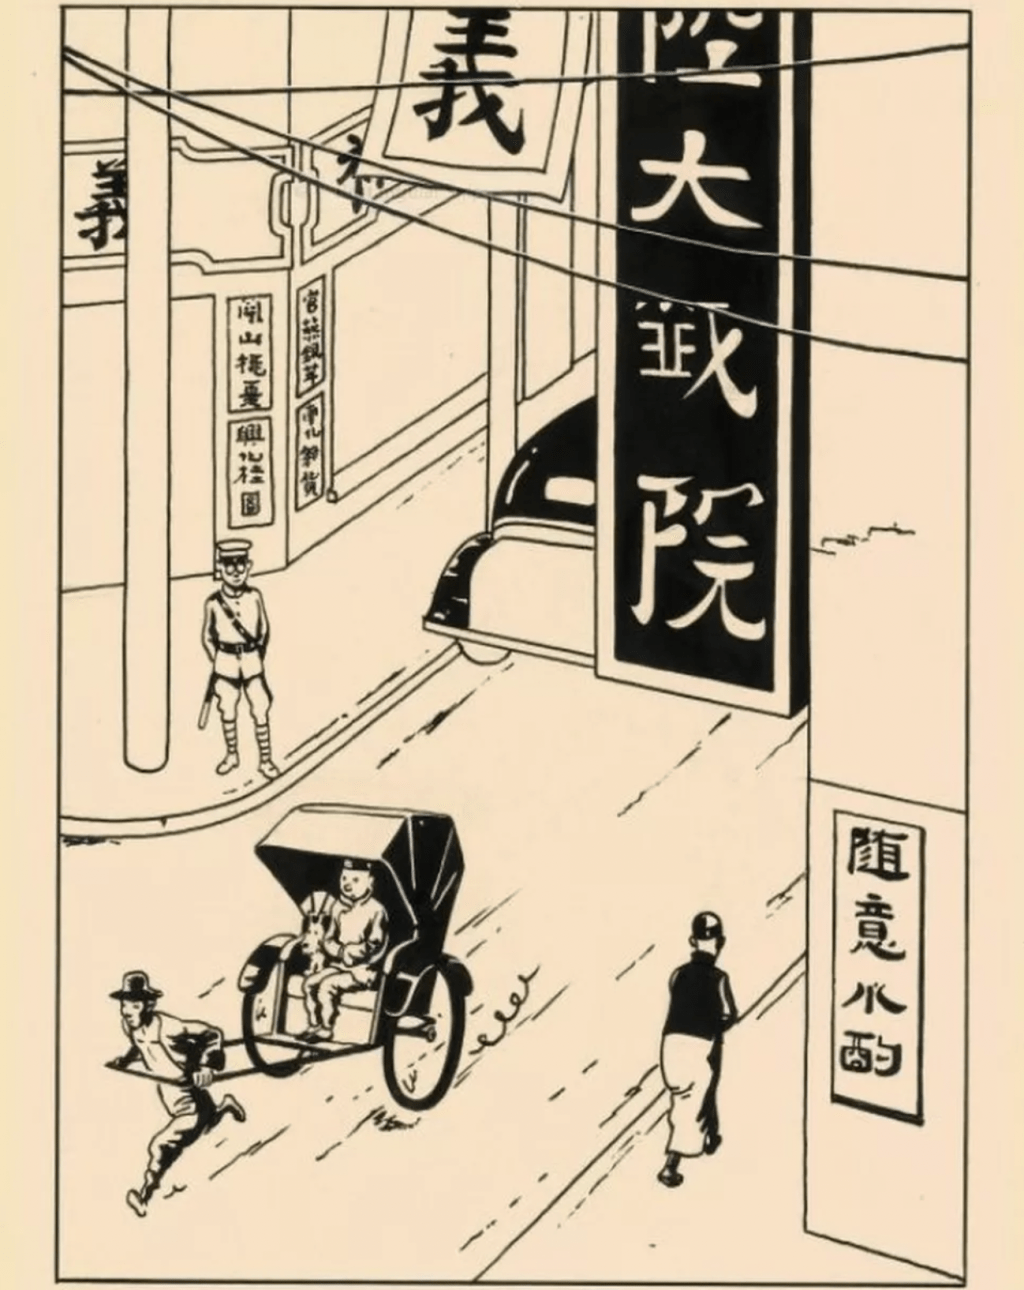 《丁丁历险记》「蓝莲花」故事中其中一页以上海为背景的原创插图，2015年在香港的拍卖会上以 960 万港元的价格售出。